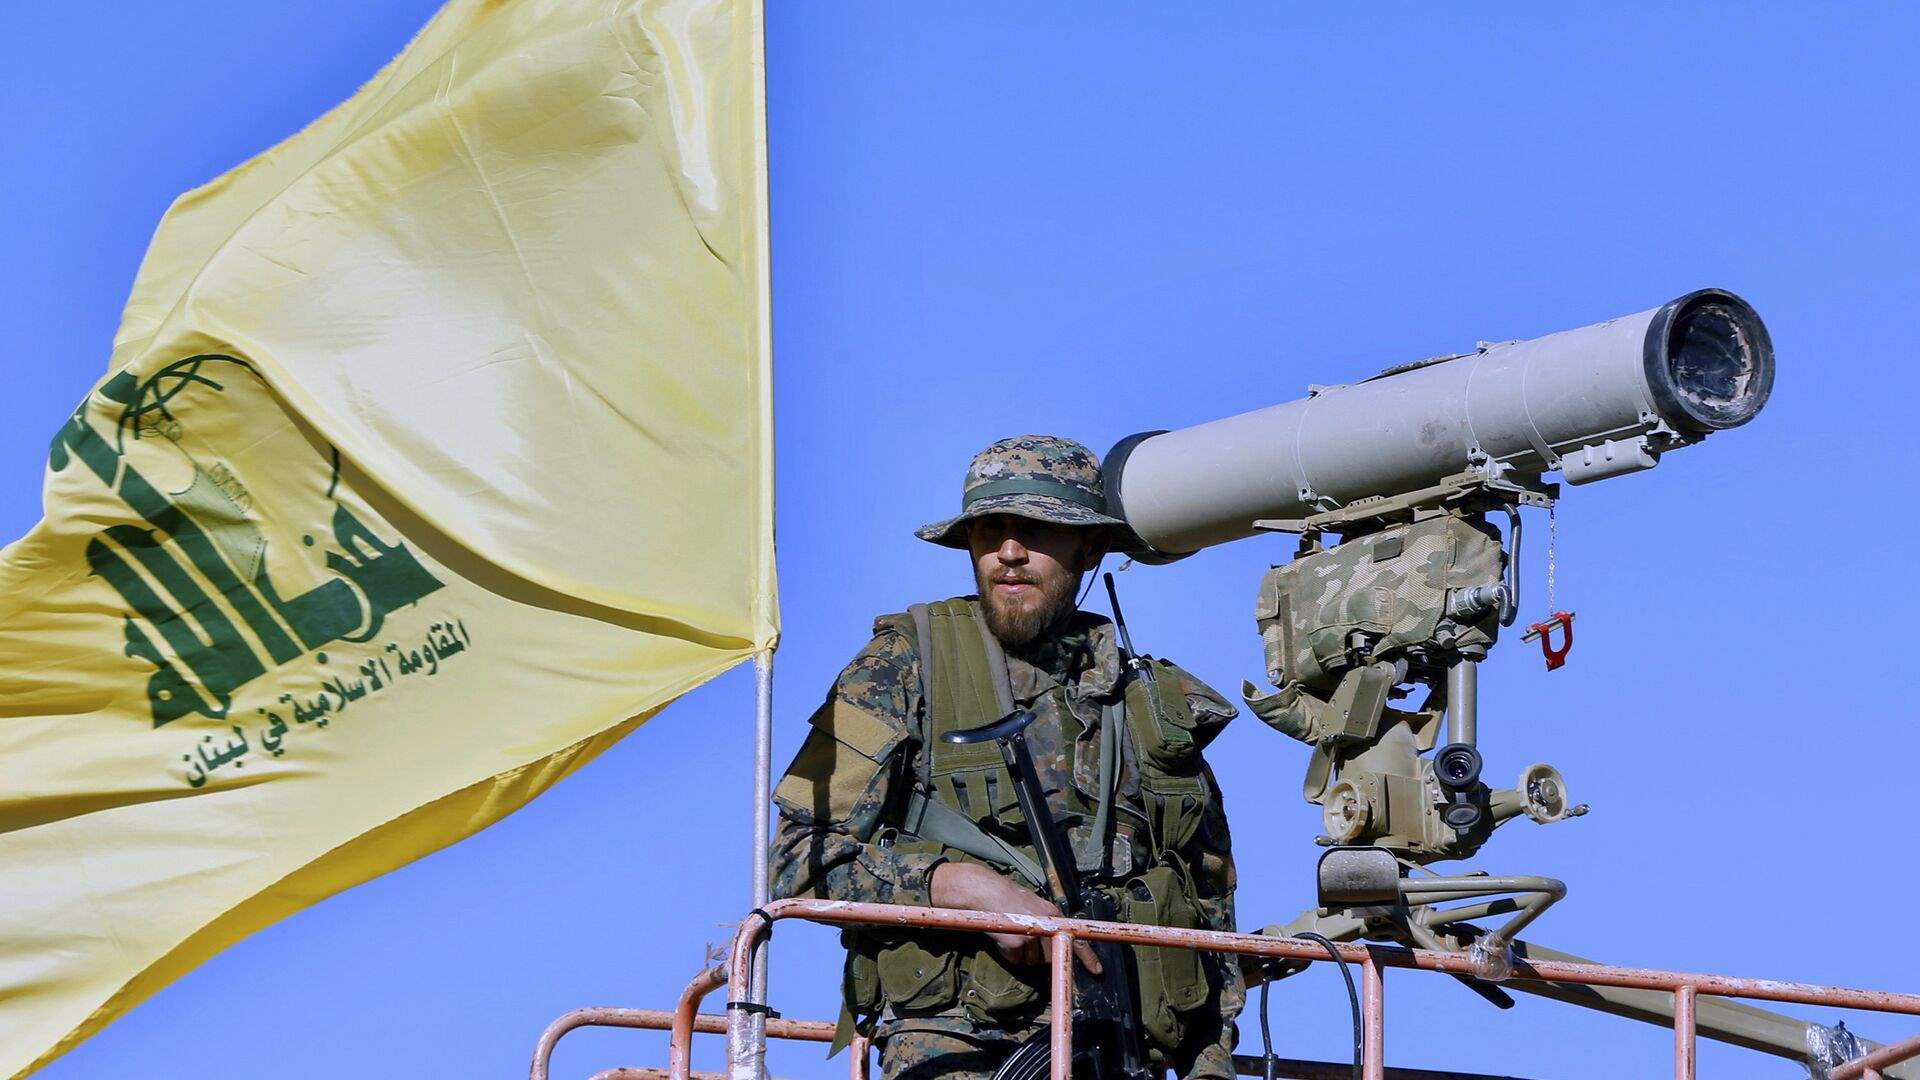 حزب الله: هاجمنا عصر اليوم بالصواريخ الموجهة مواقع رويسات العلم والسماقة وزبدين في ‏مزارع شبعا وتلال كفرشوبا المحتلة